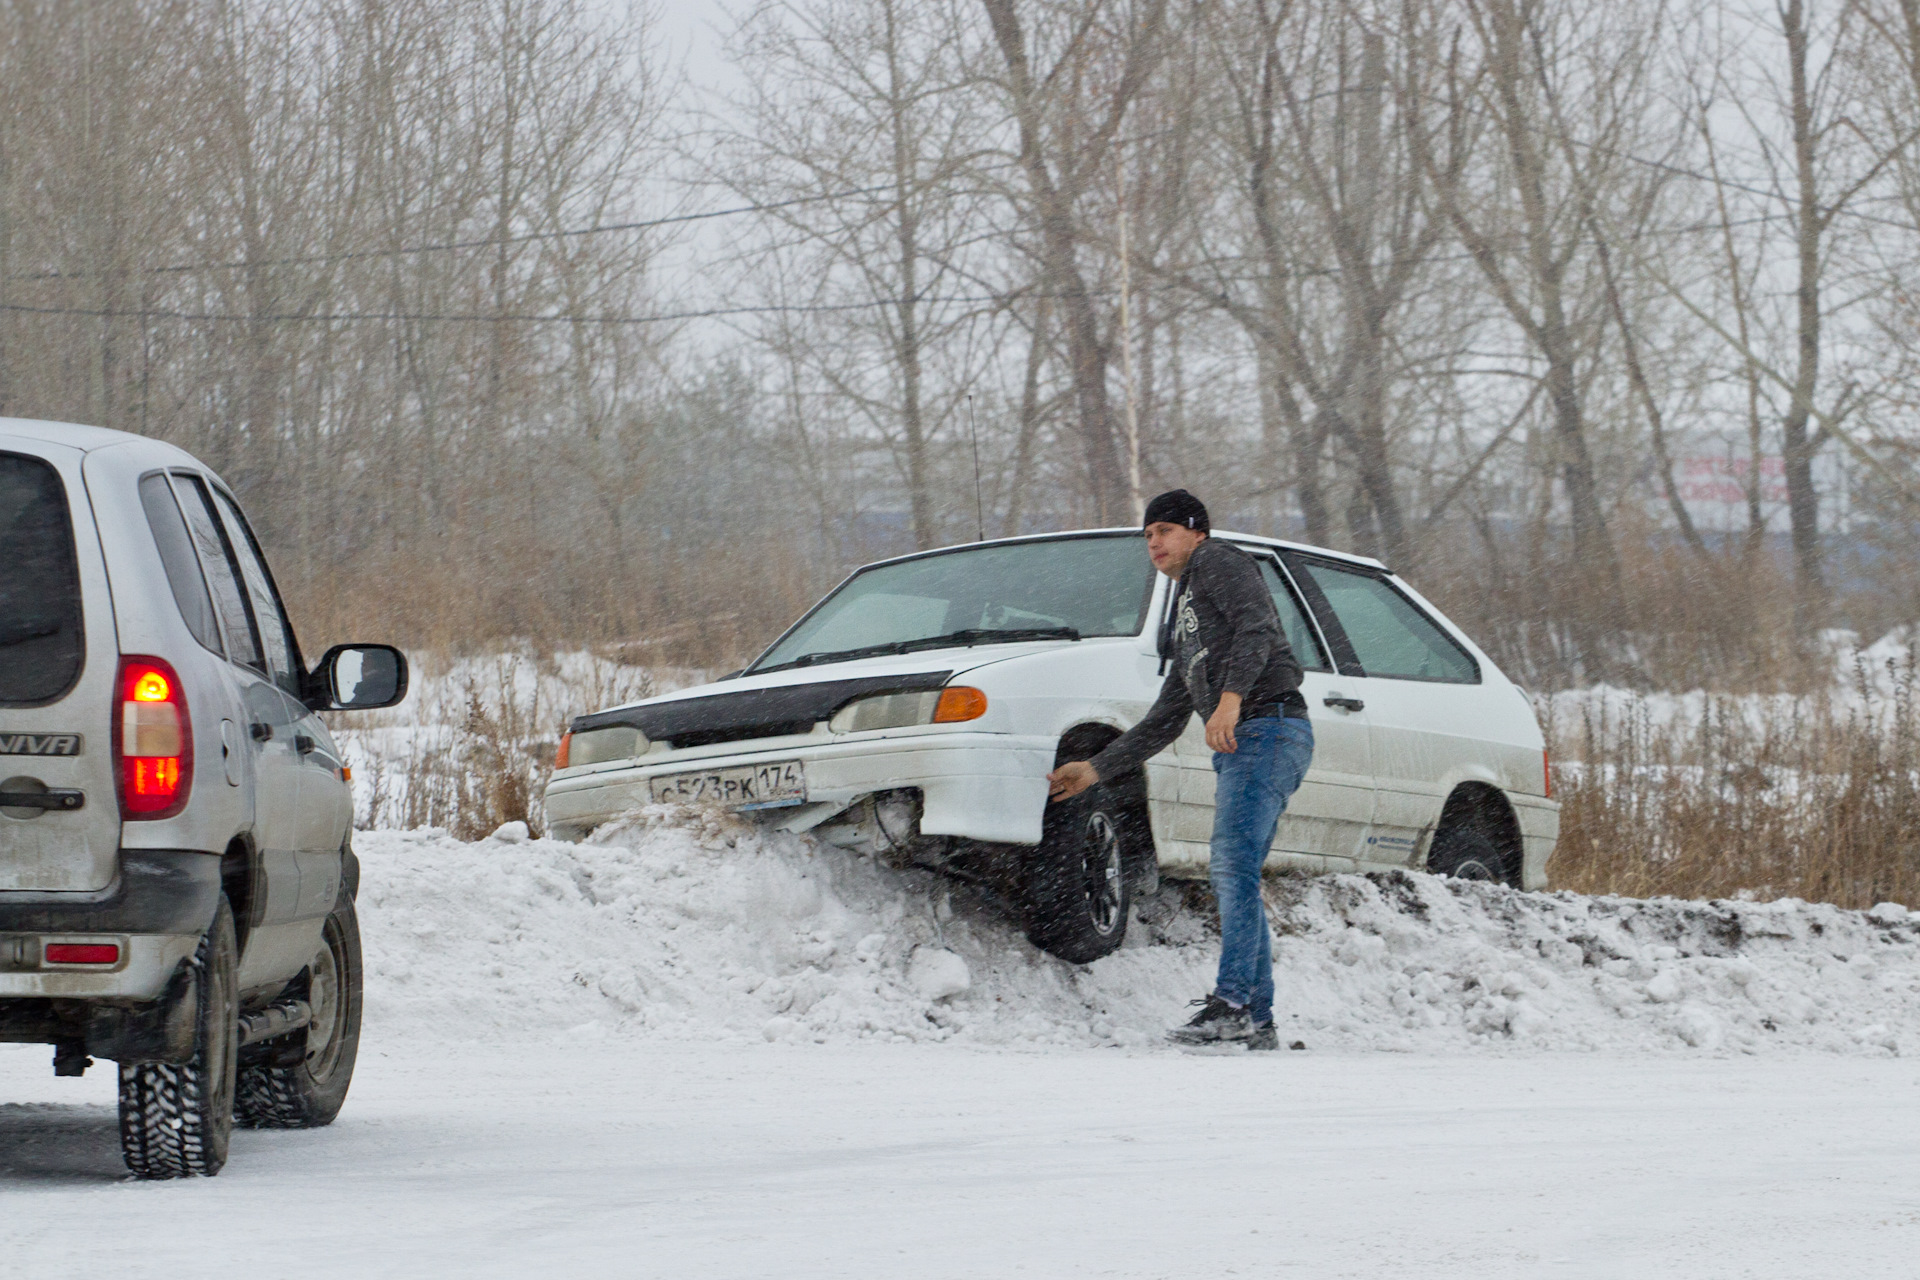 Трасса 74 Челябинск. Snow Race. Фото два джипа возле администрации г Невинномысск.